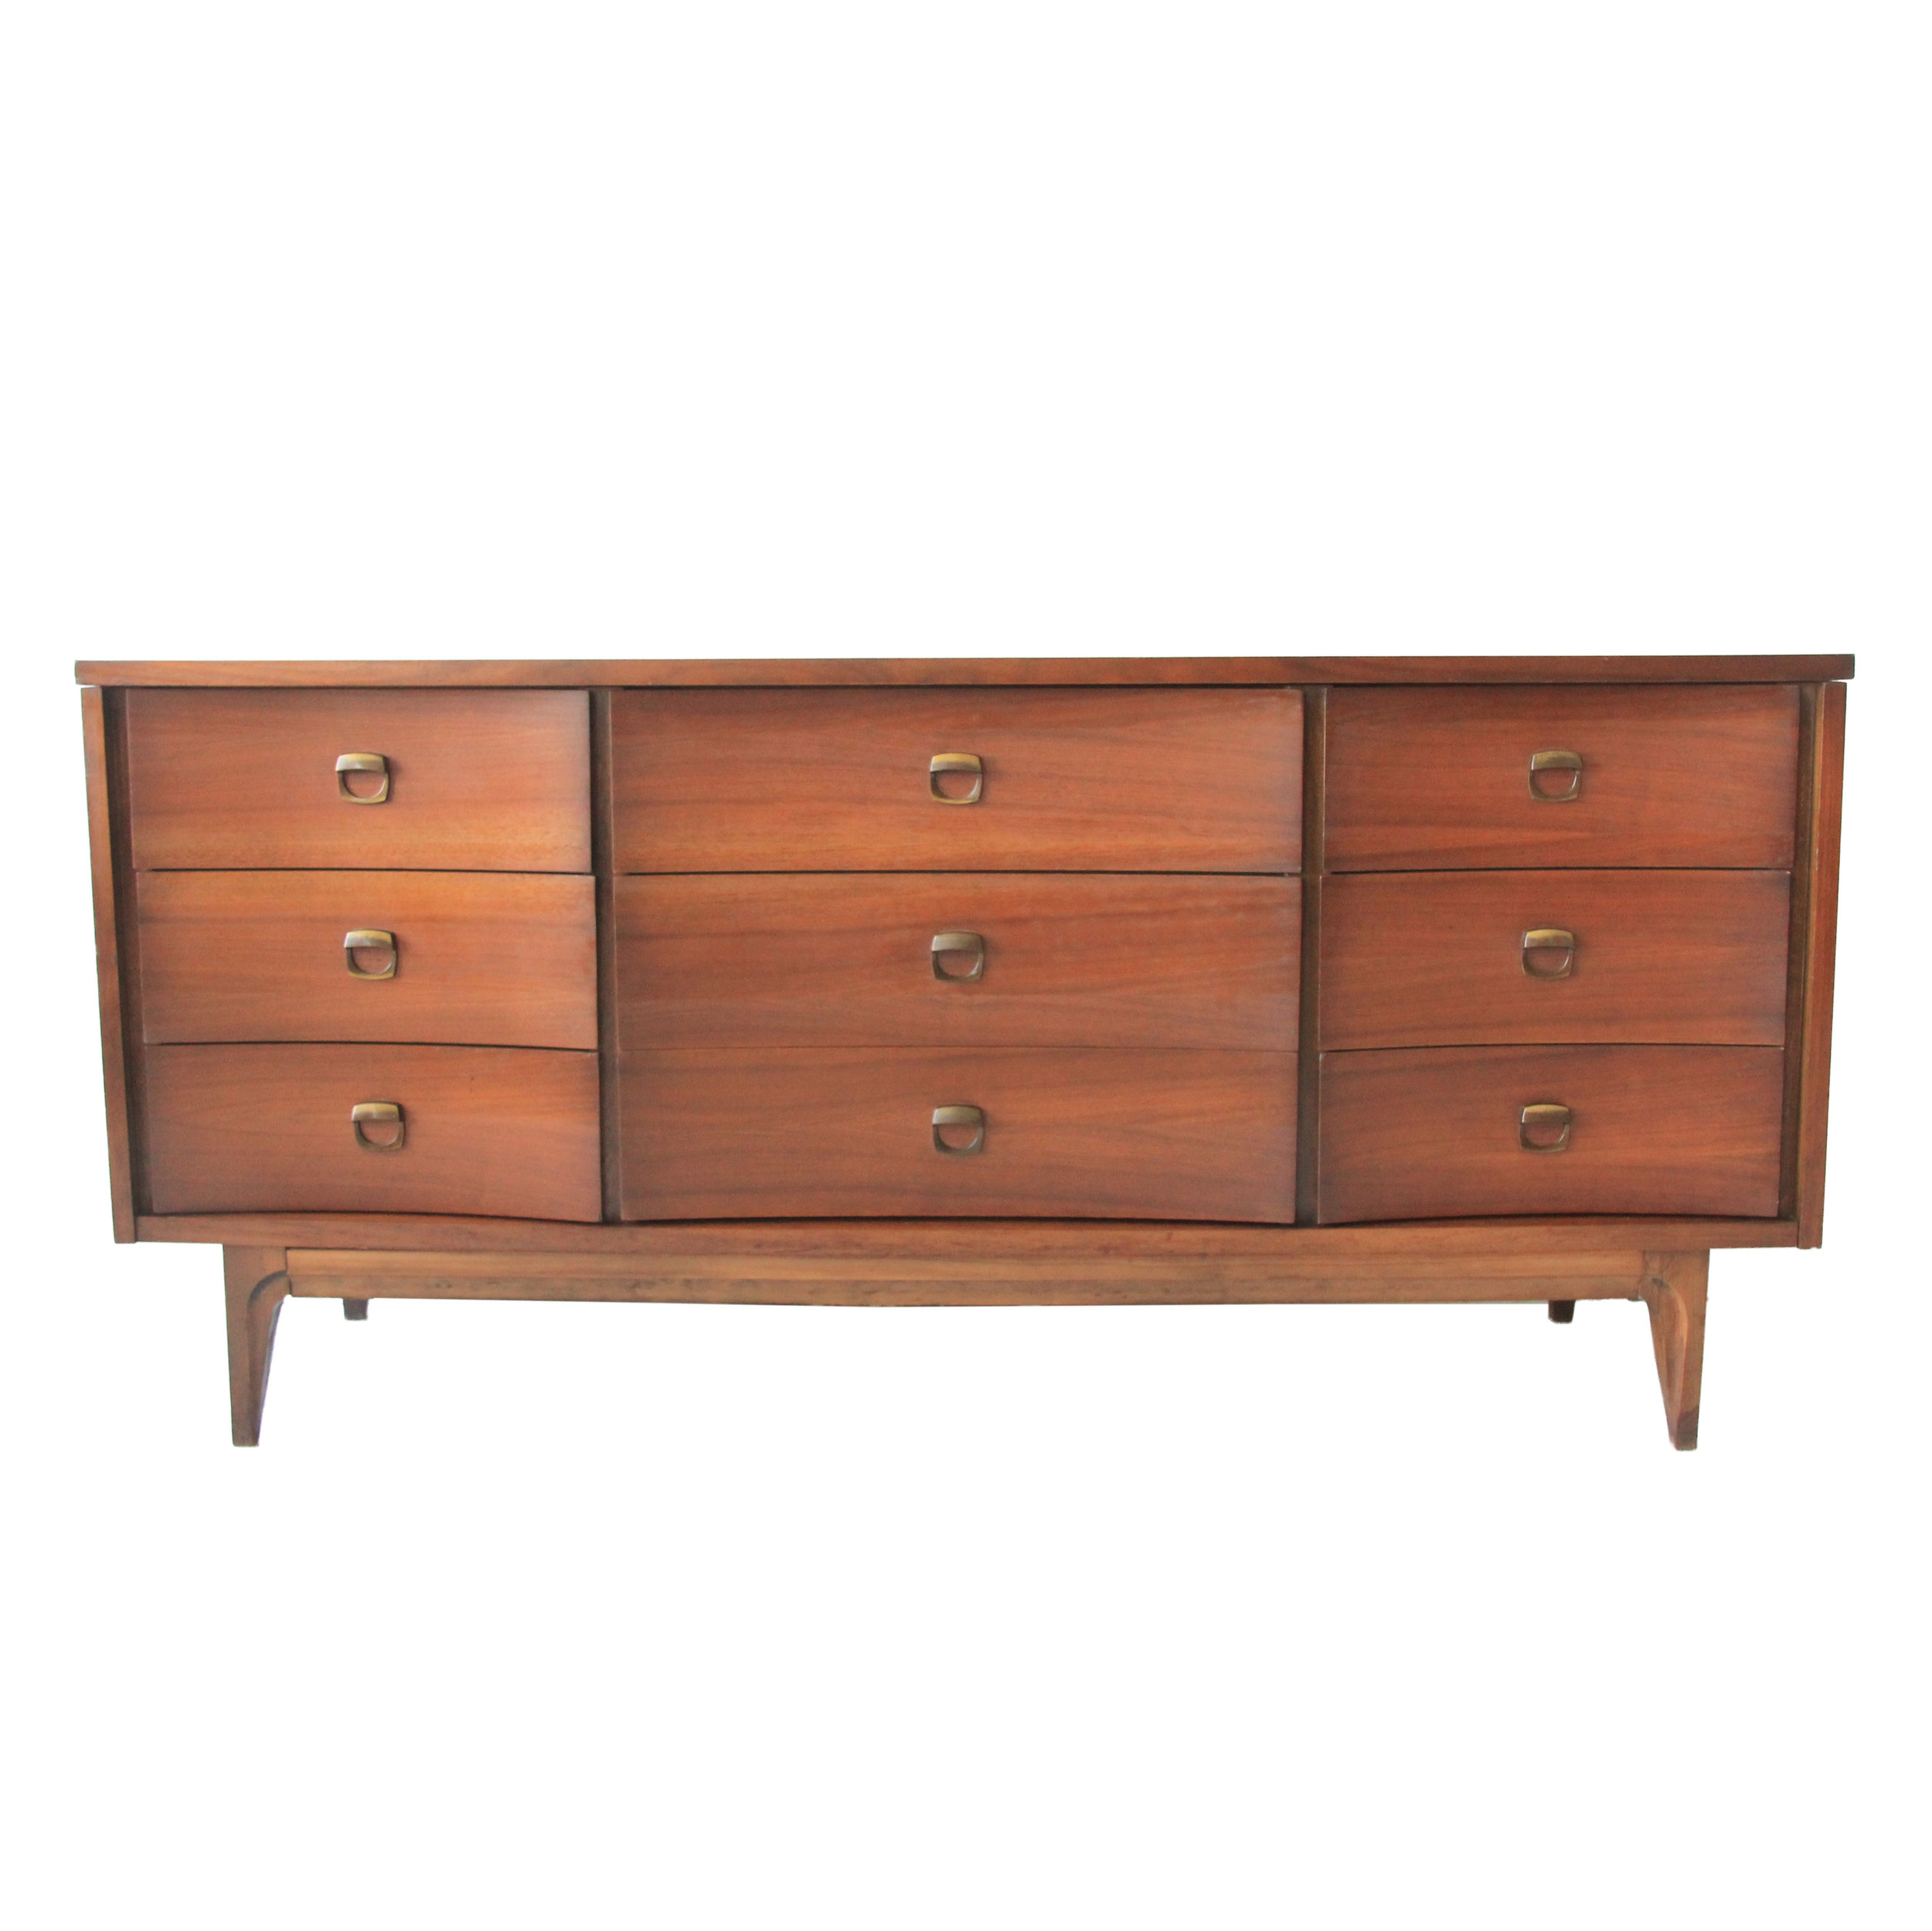 vintage mid century modern 9 drawer dresser credenza by johnson carper.jpg